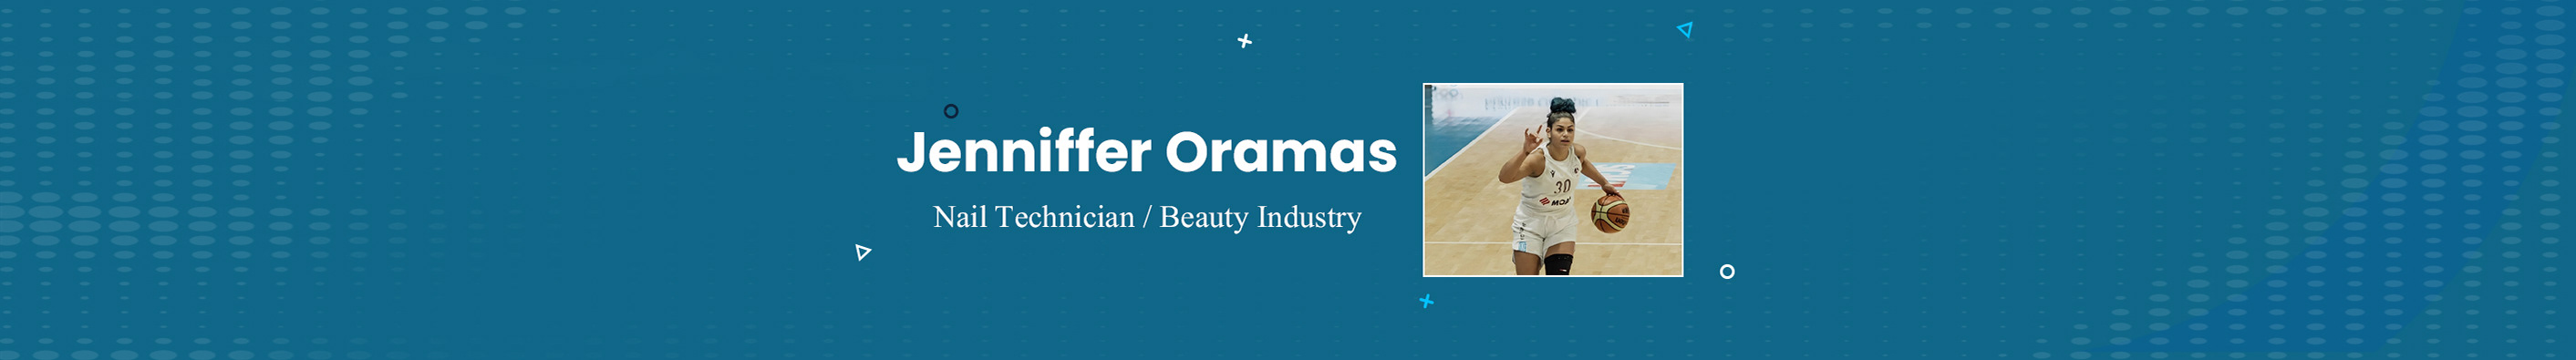 Jenniffer Oramas's profile banner